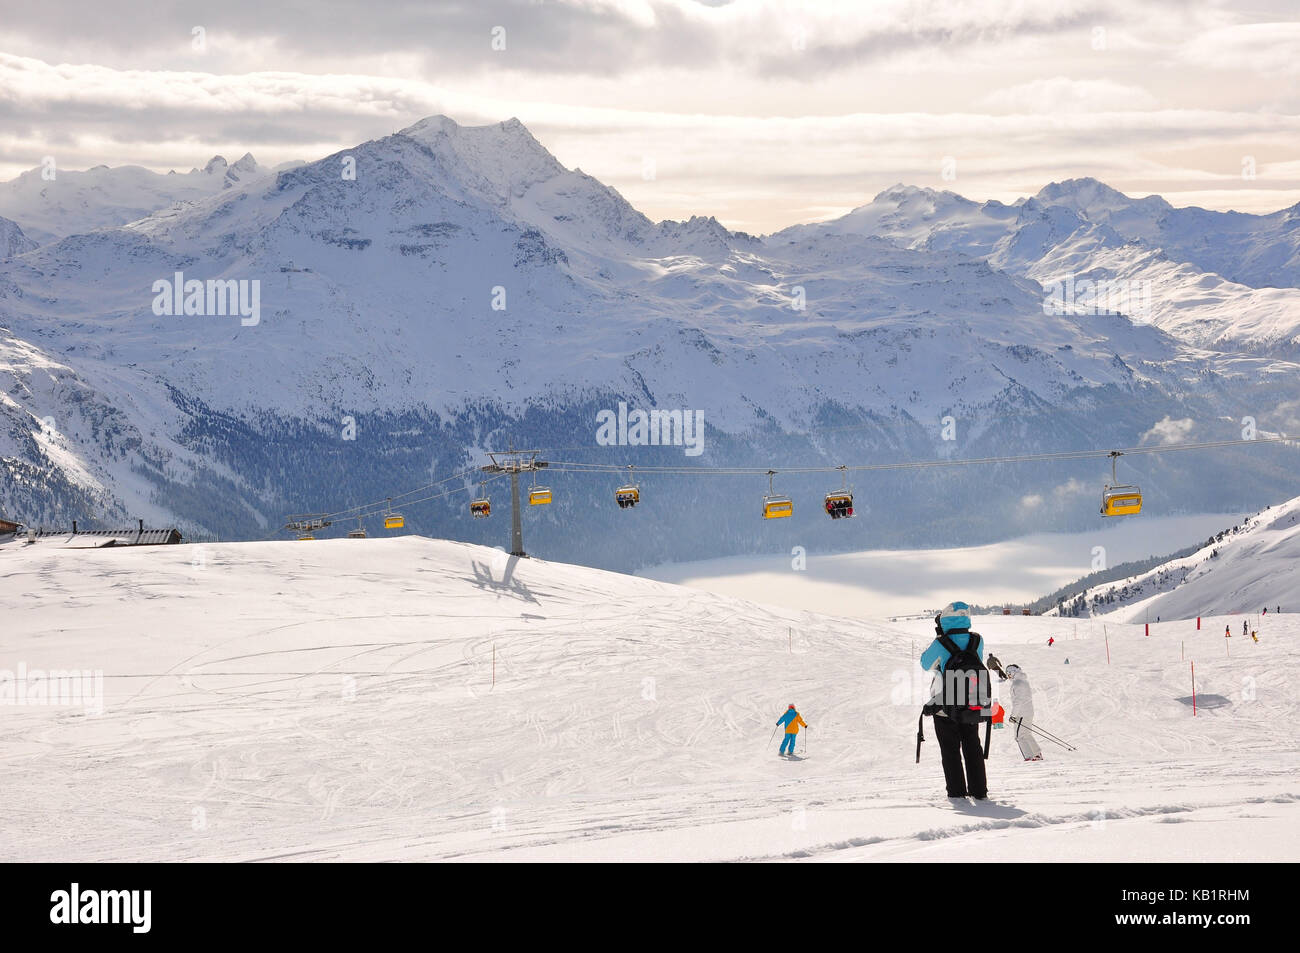 La Suisse, canton des Grisons, l'Engadine, st. MORITZ, corviglia, piste de ski, skieur, des pics de montagne, les hivers, Banque D'Images